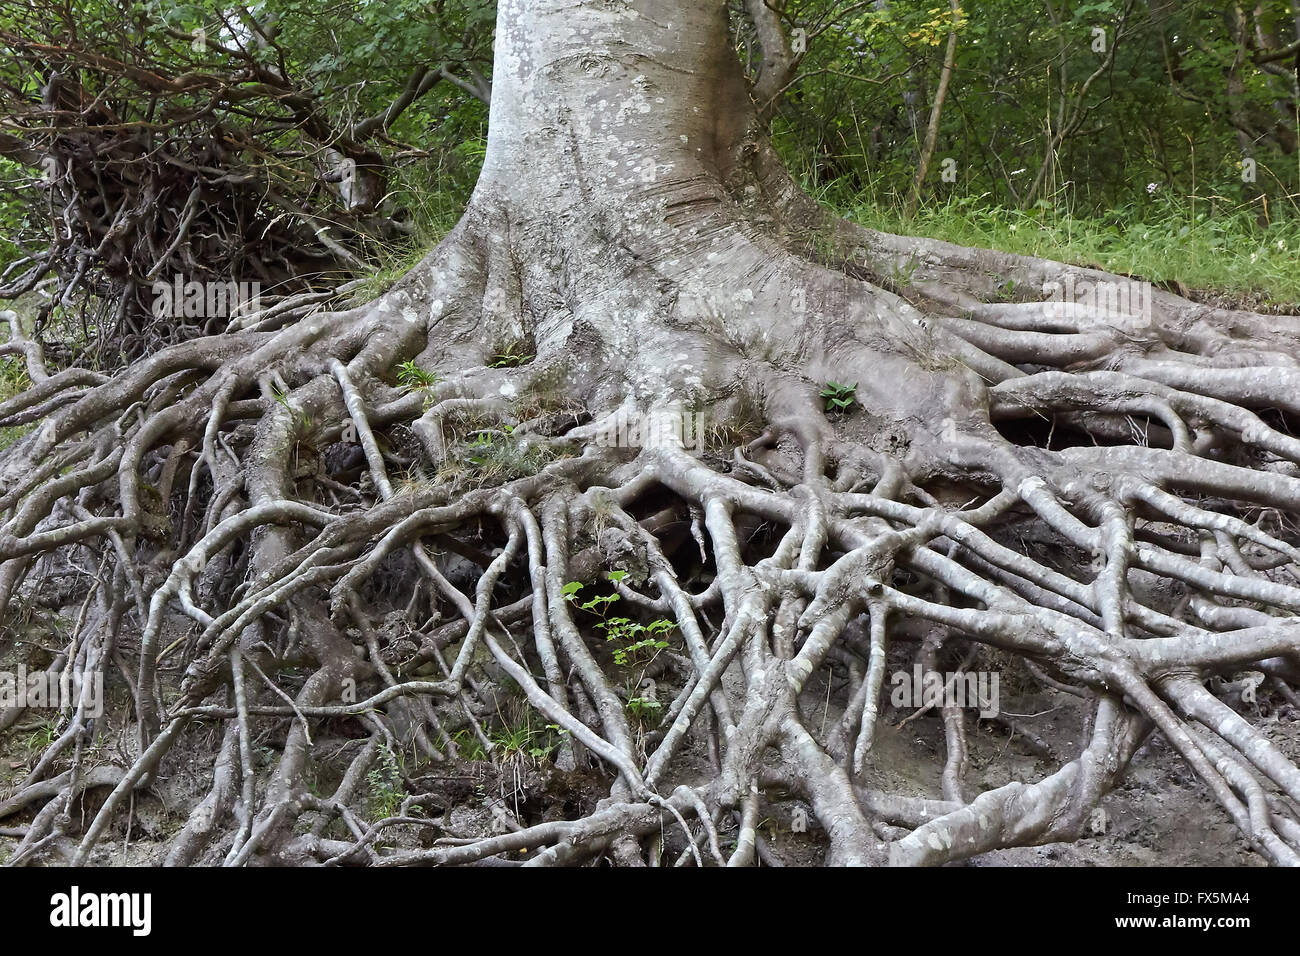 Radici degli alberi immagini e fotografie stock ad alta risoluzione - Alamy